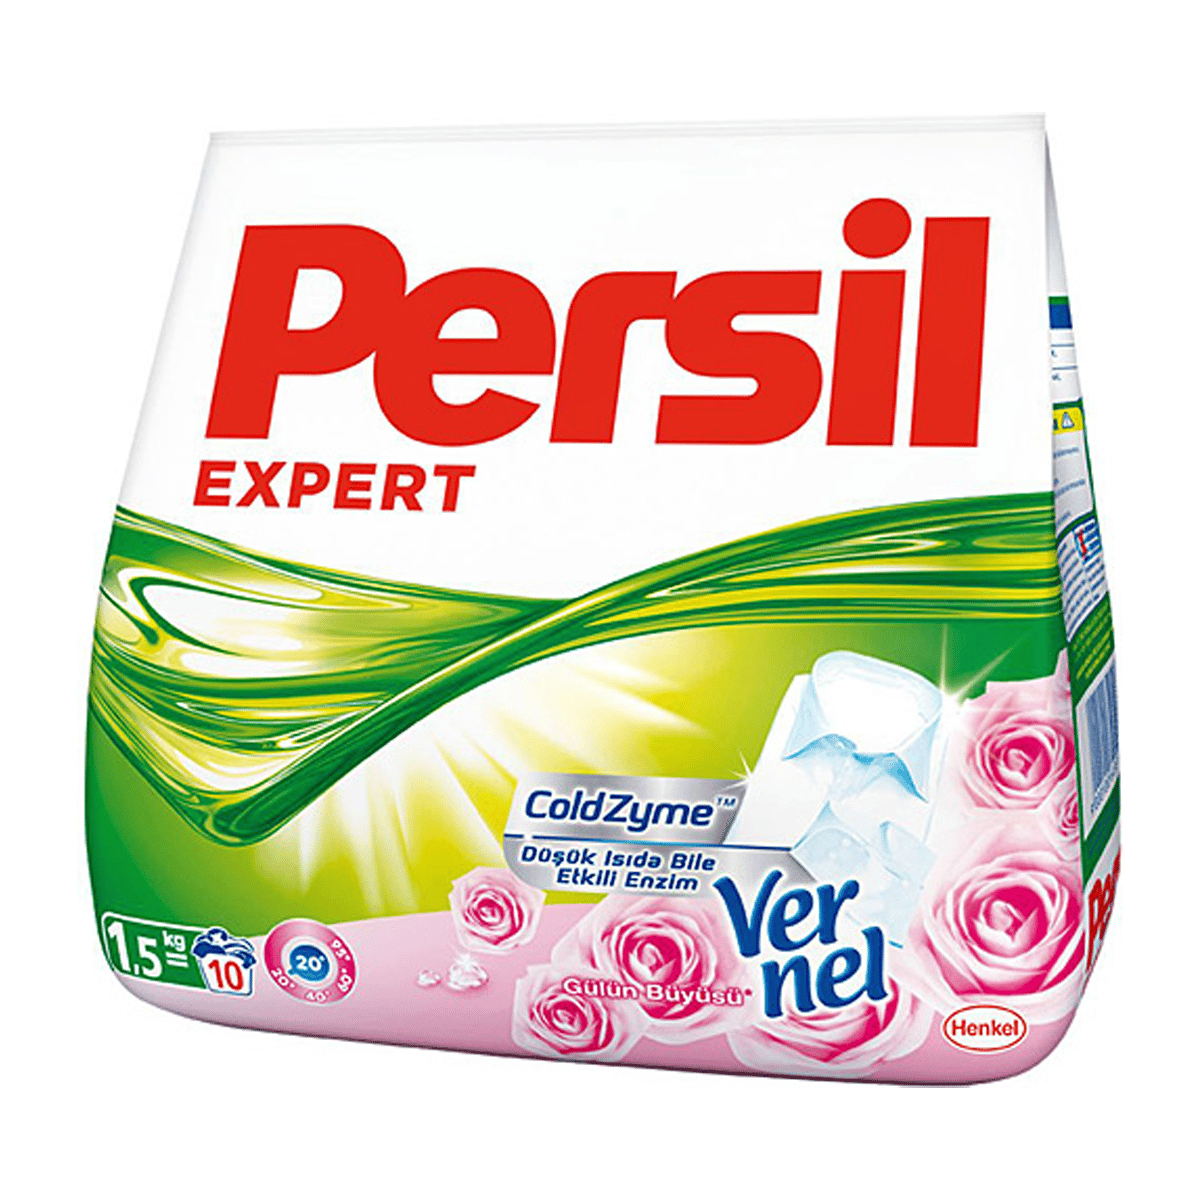 Persil Expert Beyazlar Gülün Büyüsü Çamaşır Deterjanı 1,5 KG